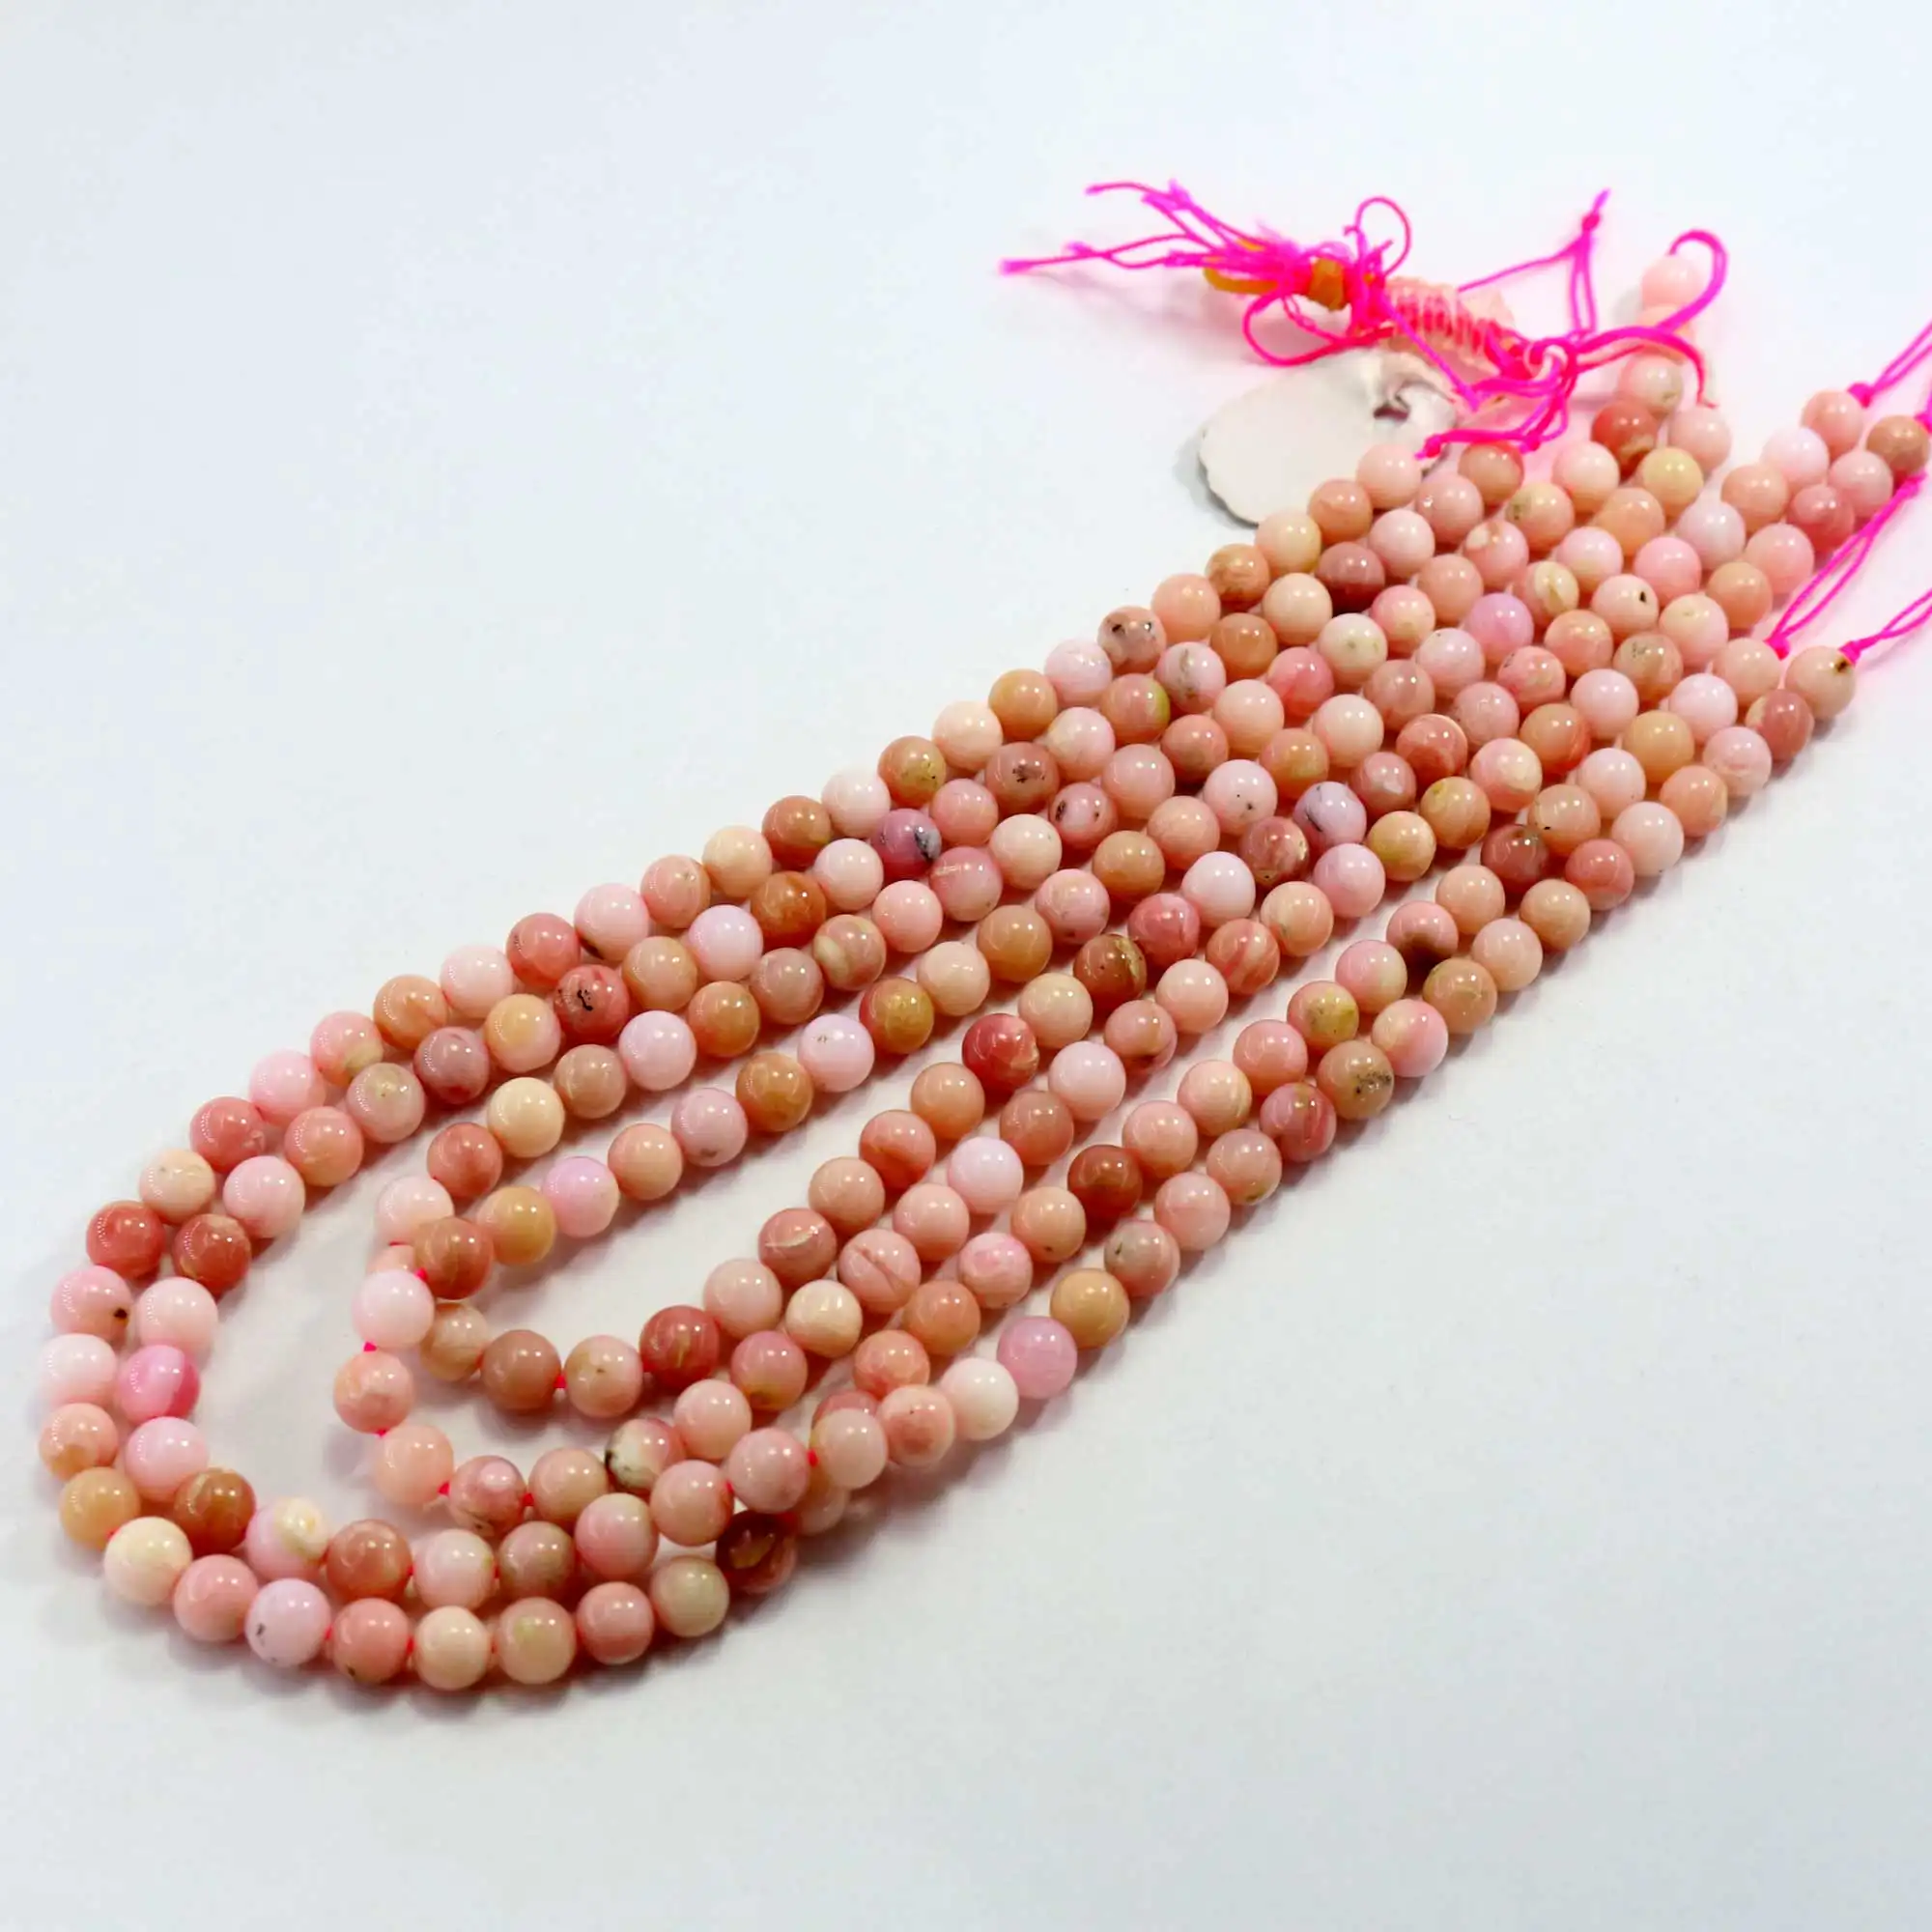 Braccialetto della collana delle perle della pietra preziosa allentata opale rosa naturale dei monili di modo che fa prezzo di fabbrica all'ingrosso